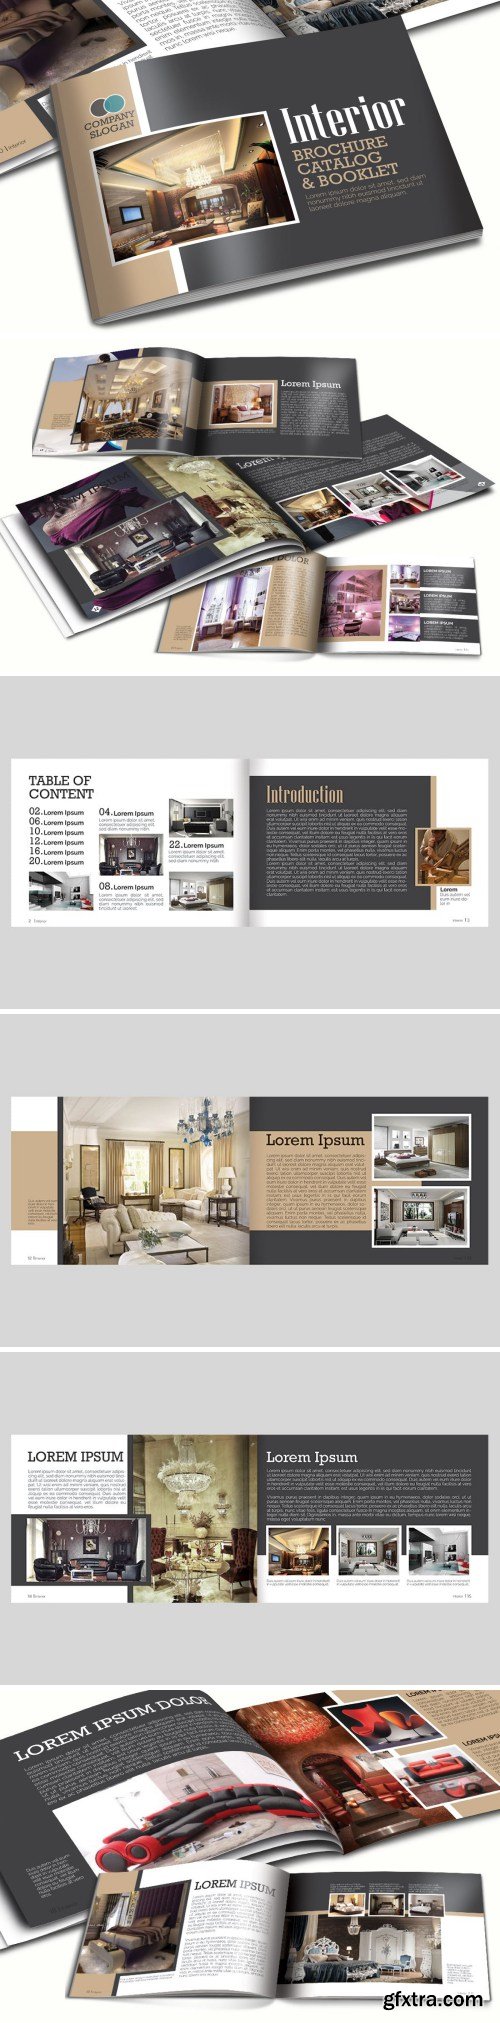 A5 Interior Booklet/Brochure Template Vol 1